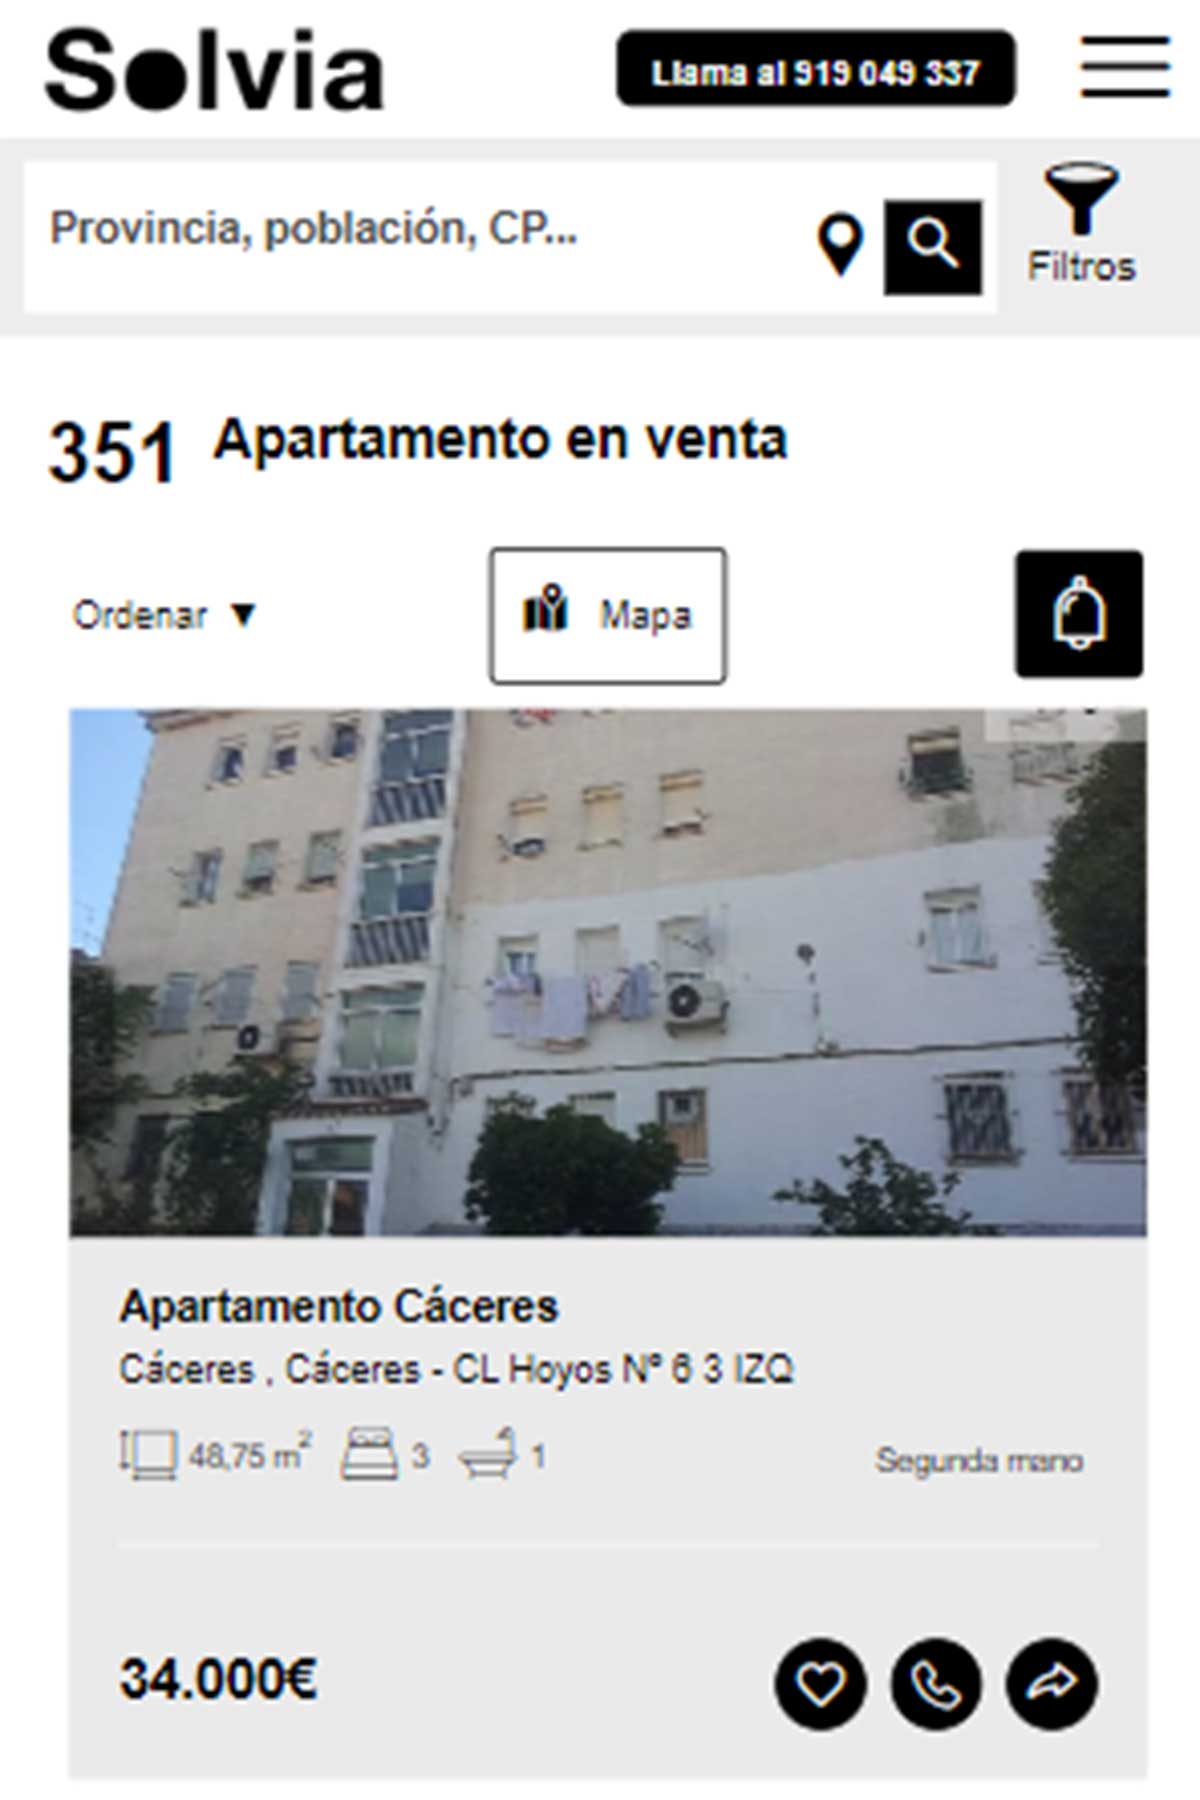 Apartamento a la venta por 34.000 euros